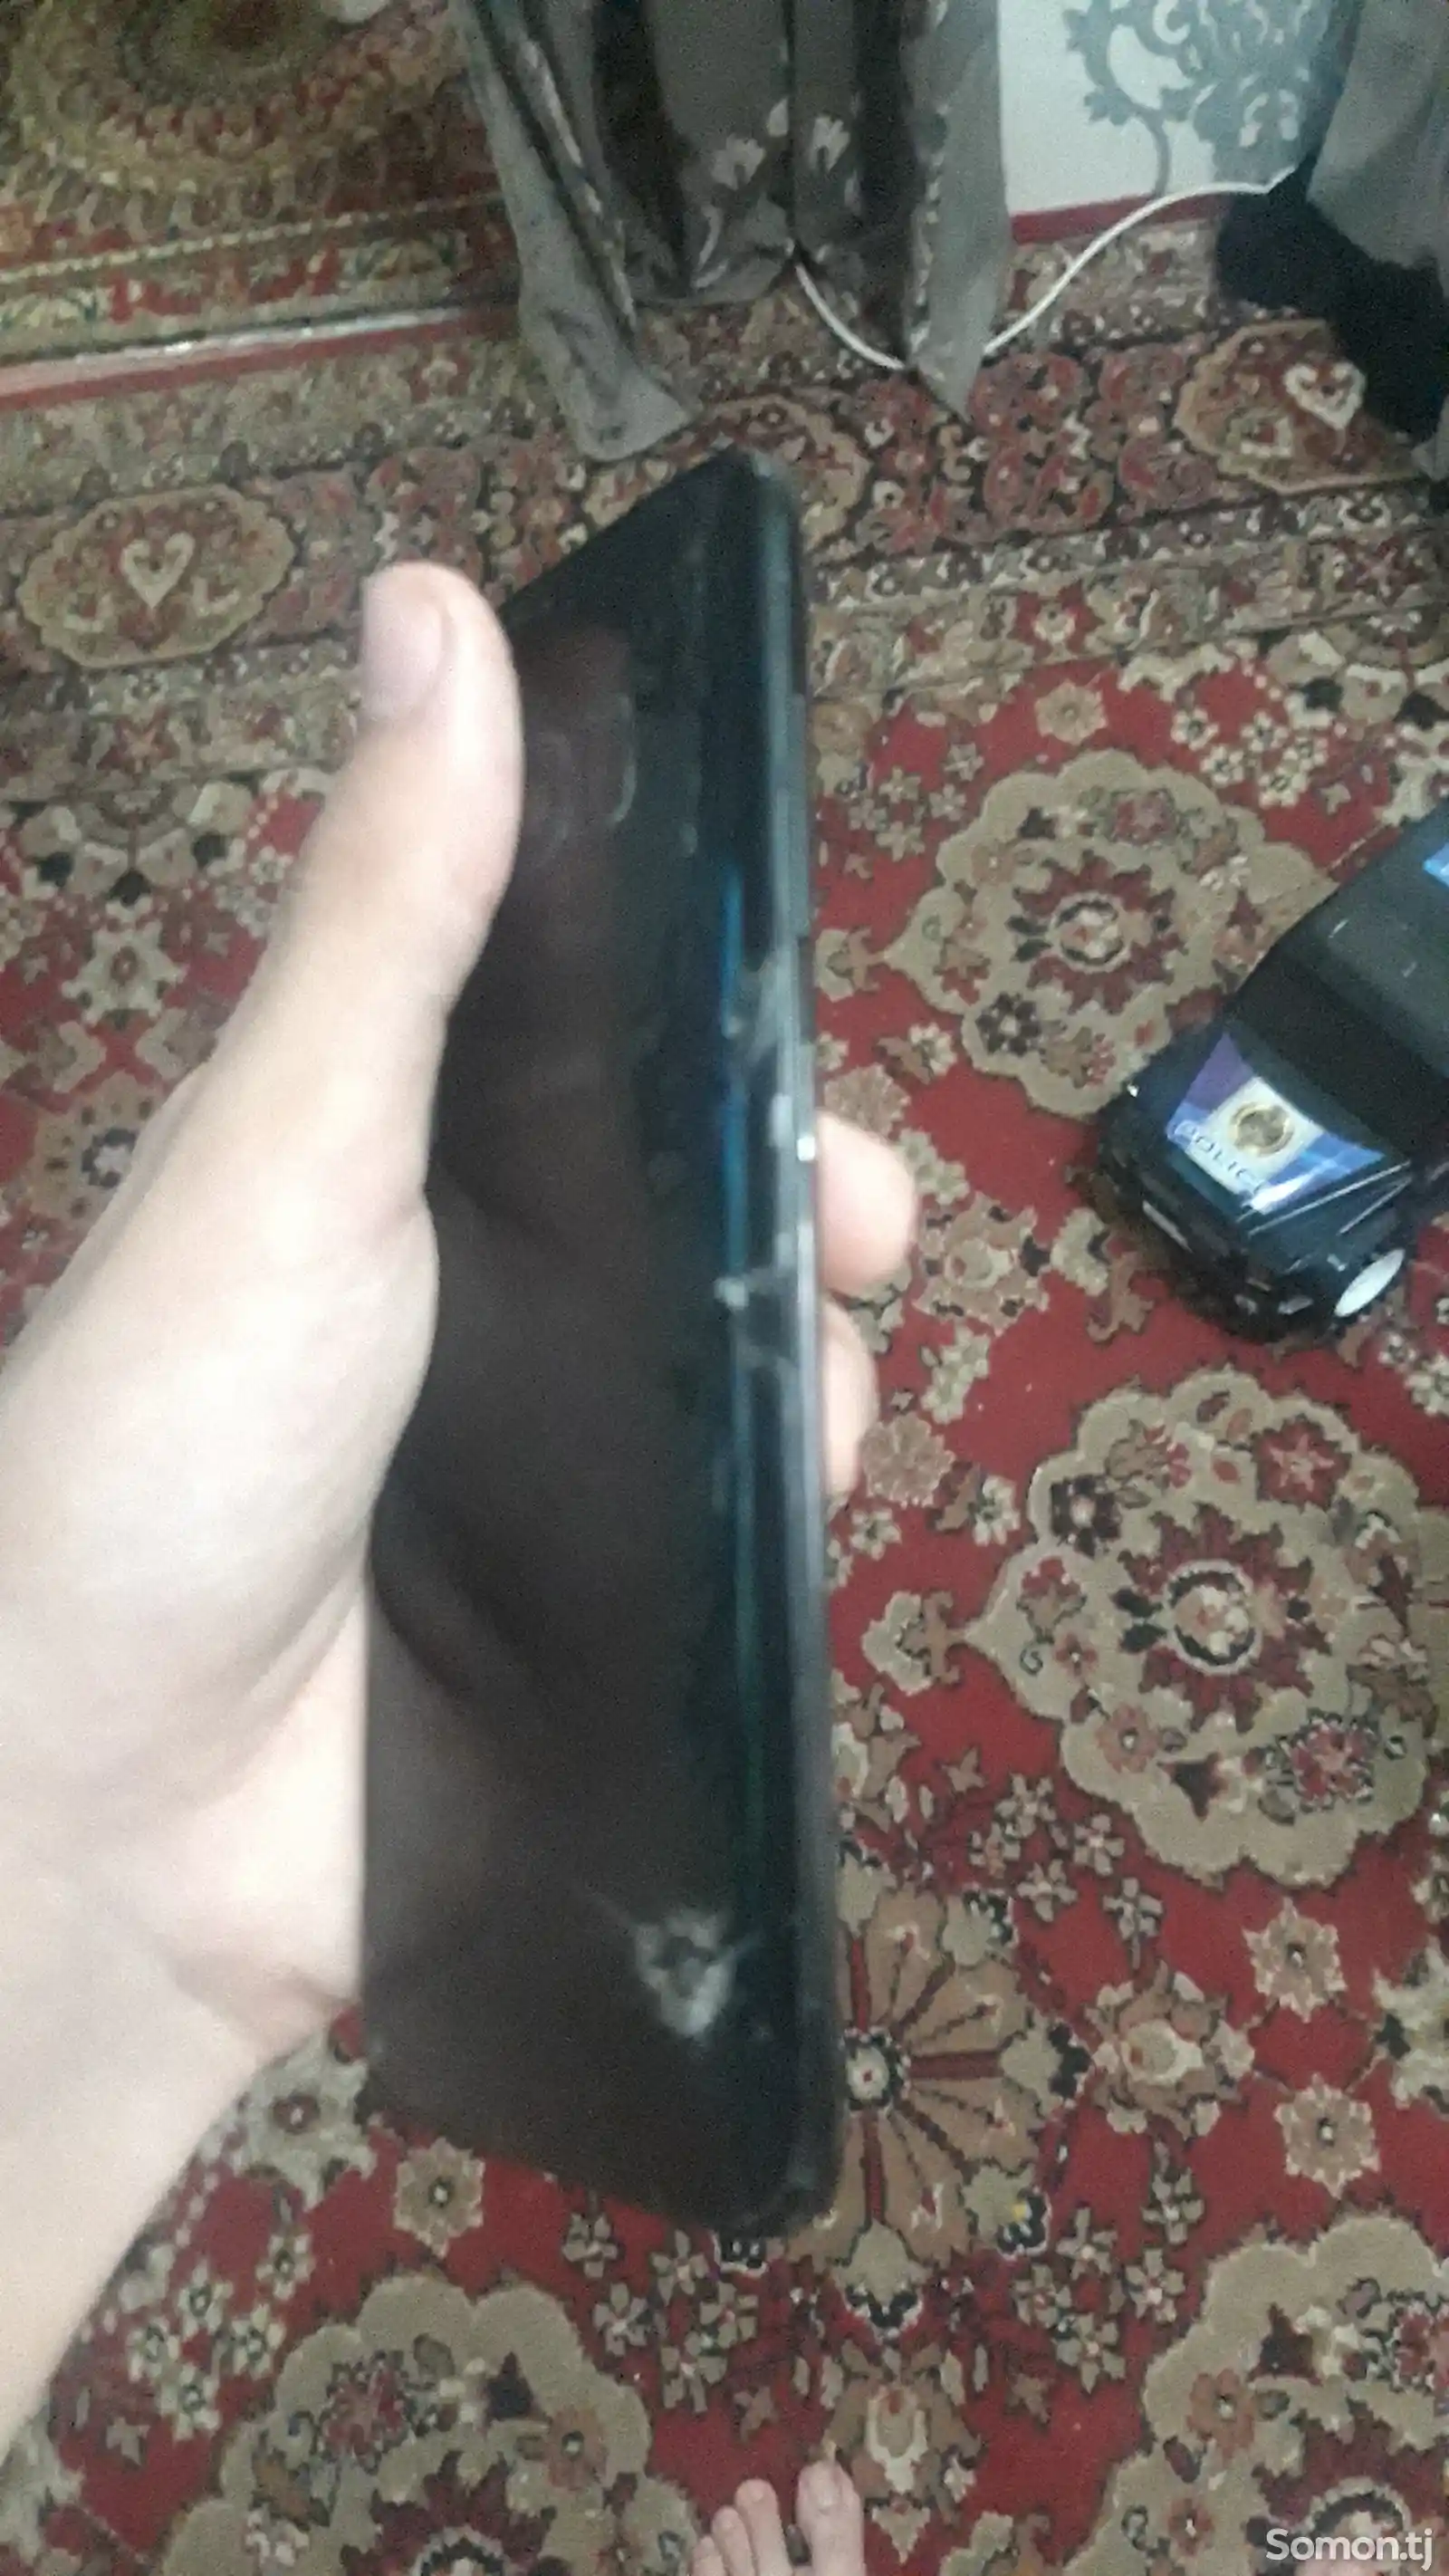 Samsung Galaxy S8 64gb-6